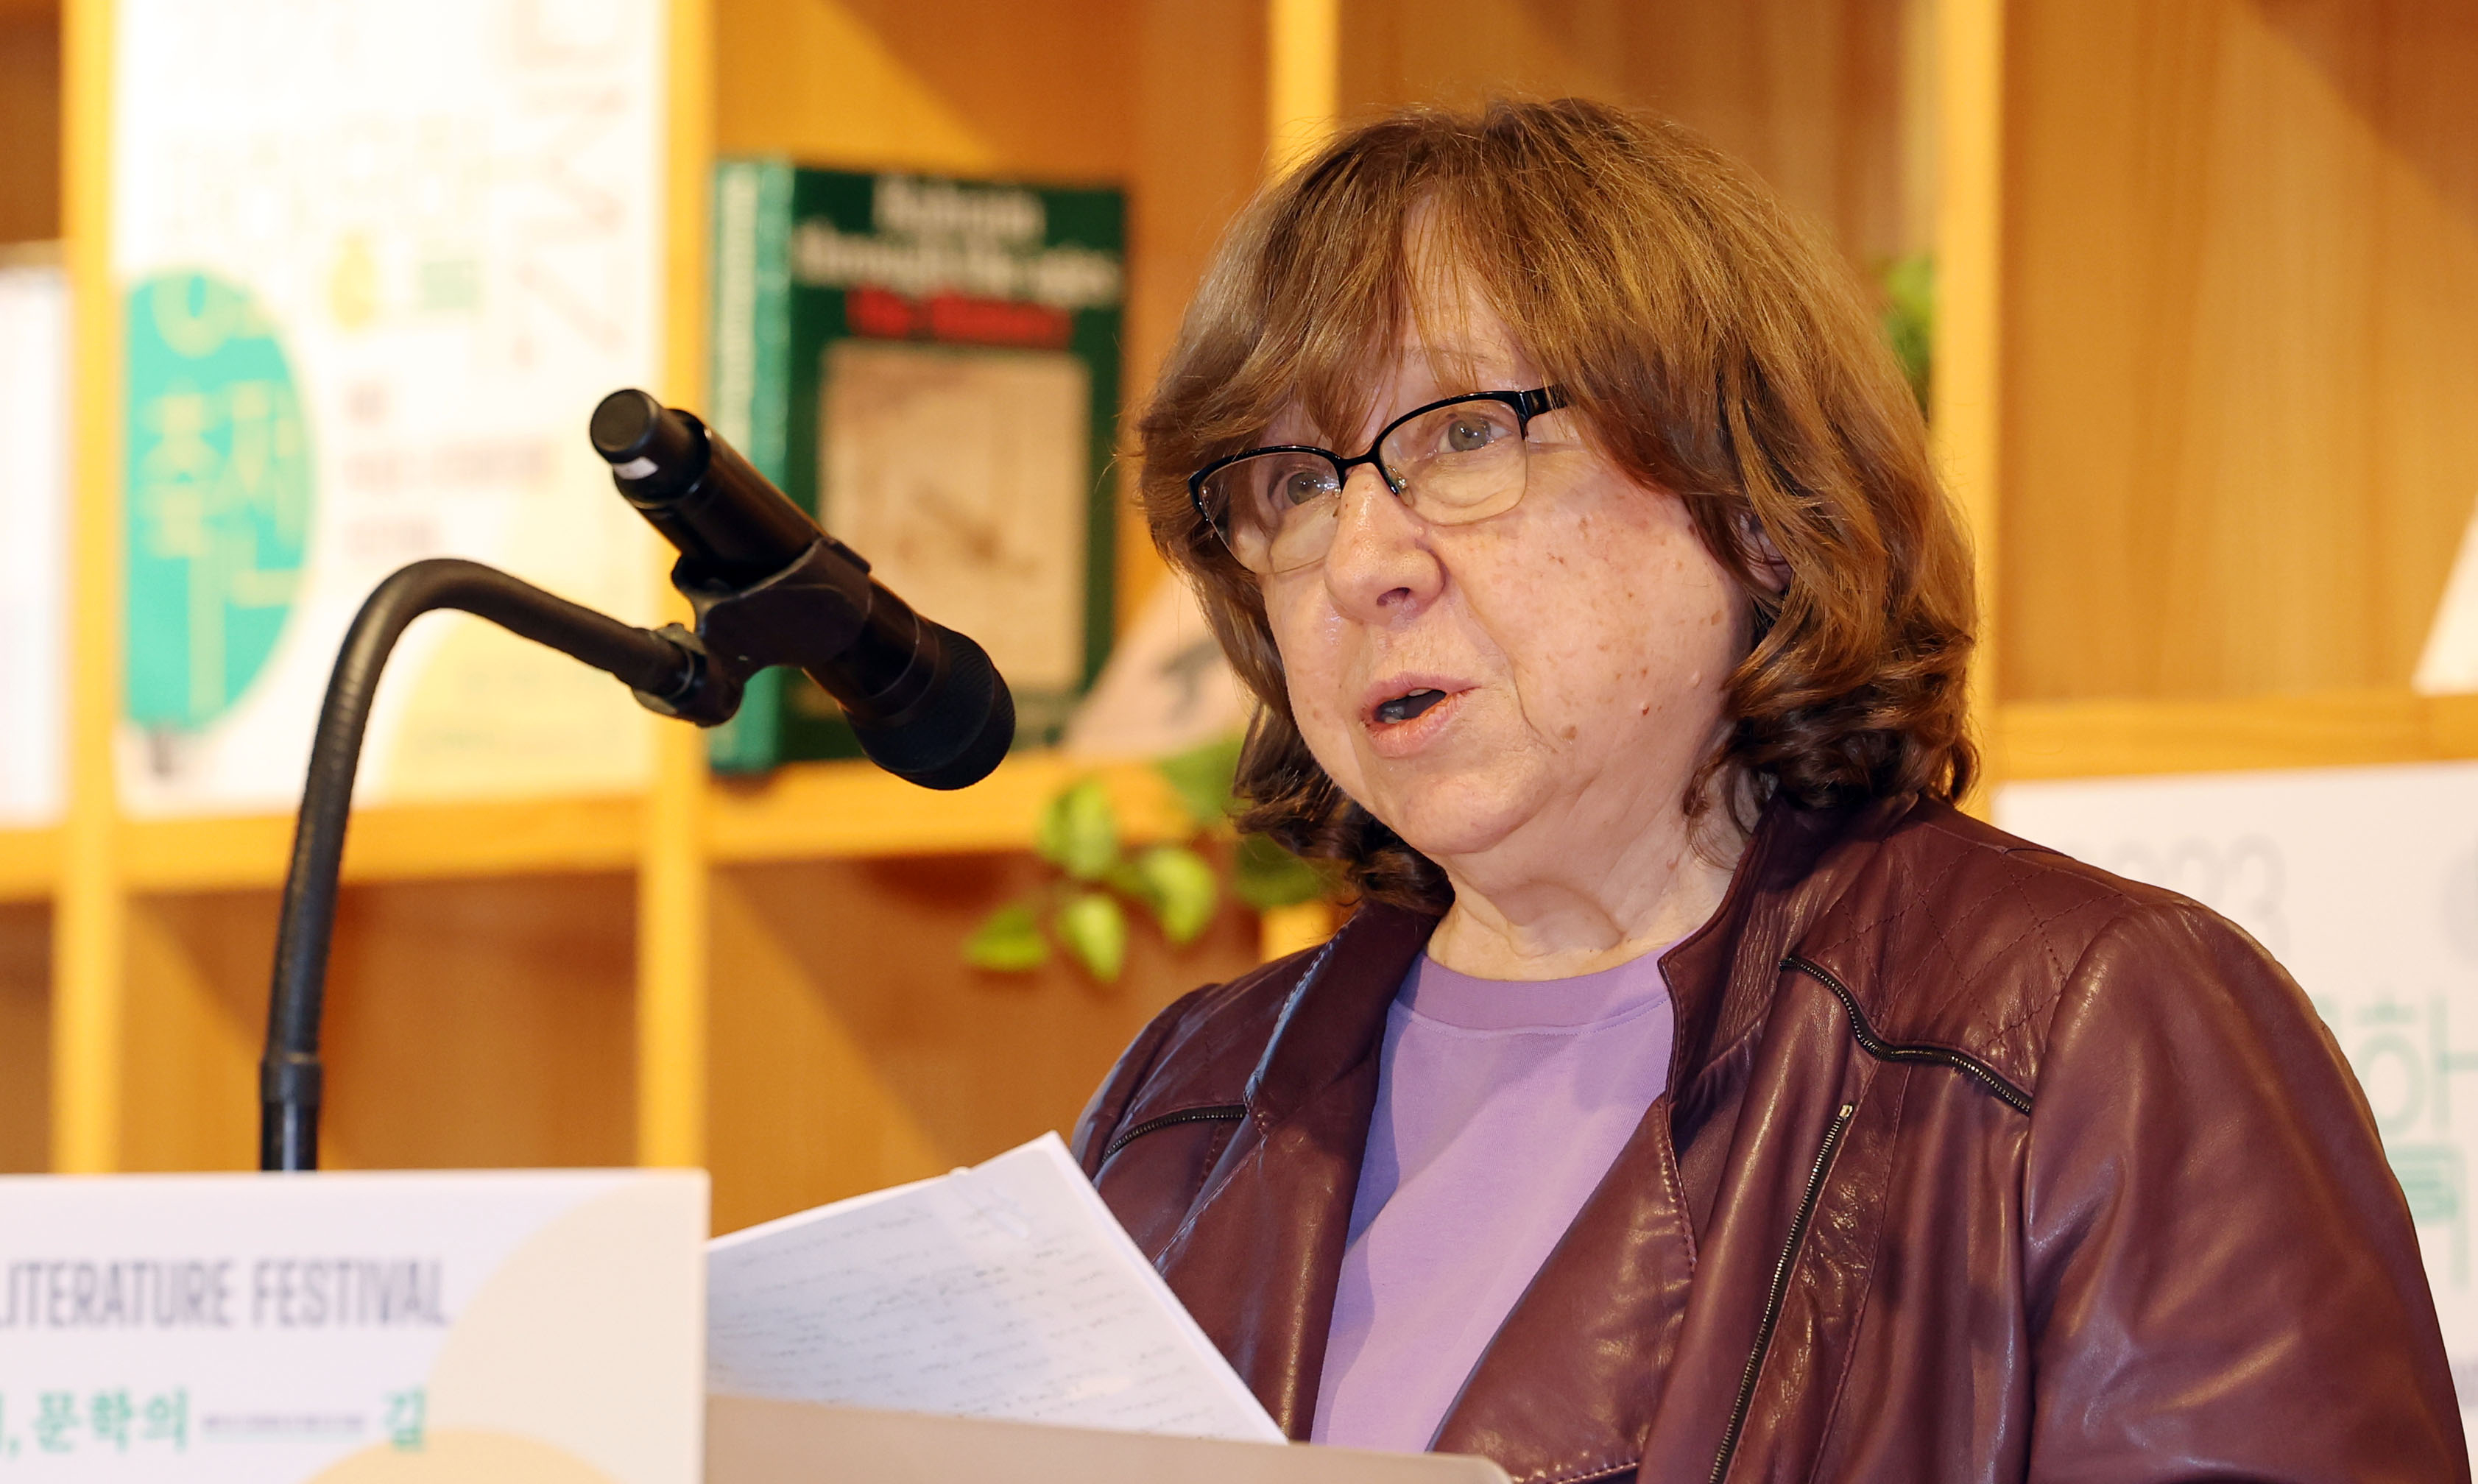 24일 경기도 파주 아시아출판문화정보센터에서 열린 2023 DMZ 평화문학축전 개막식에서 2015년 노벨문학상 수상자인 스베틀라나 알렉시예비치 작가가 기조연설을 하고 있다.